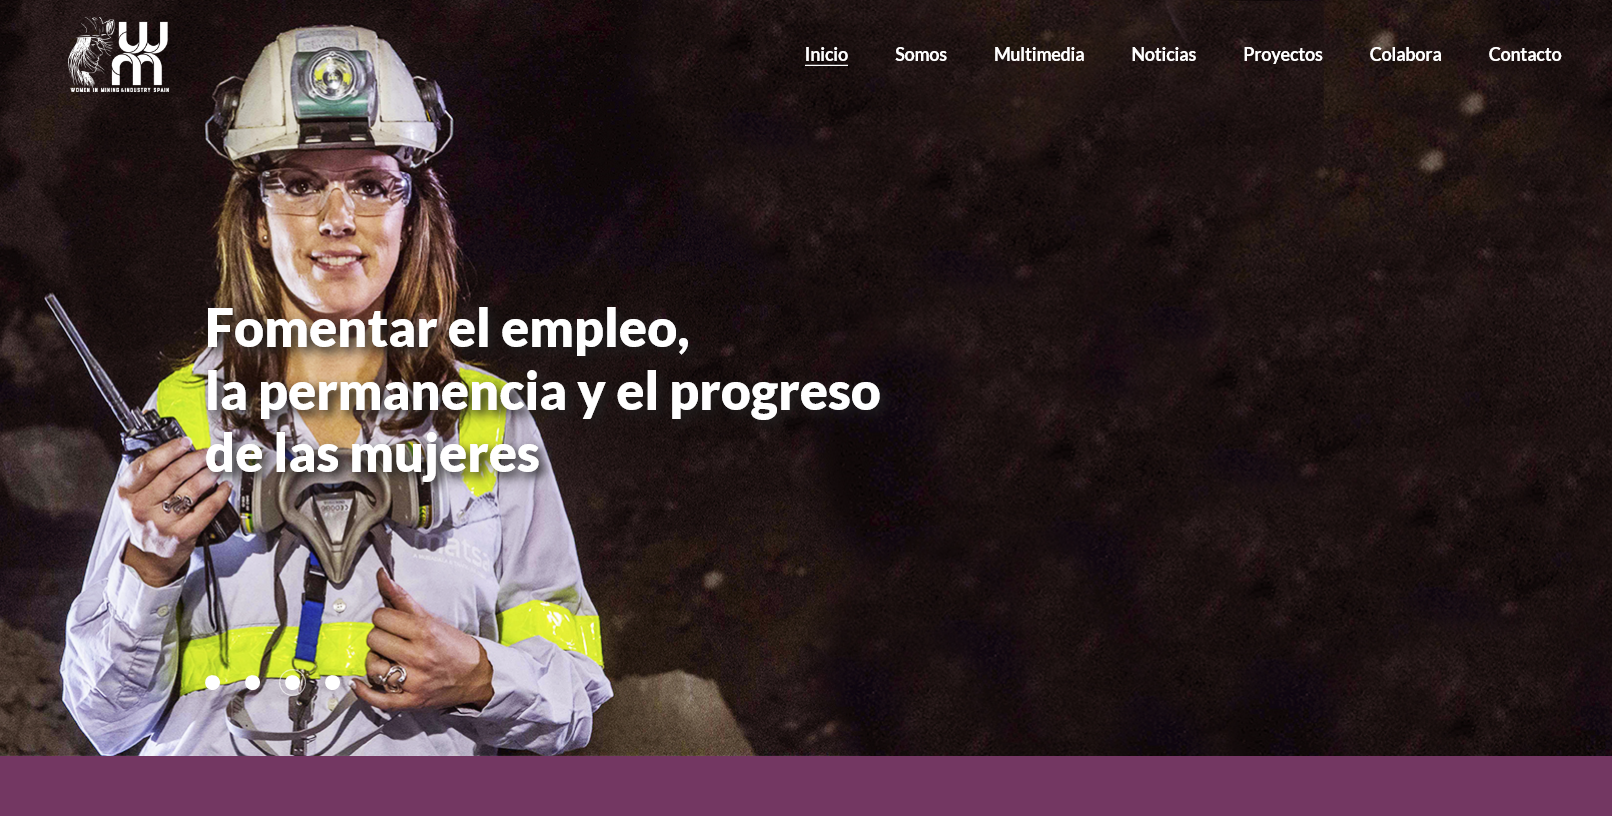 Acuerdo de colaboración con Women in Mining & Industry Spain